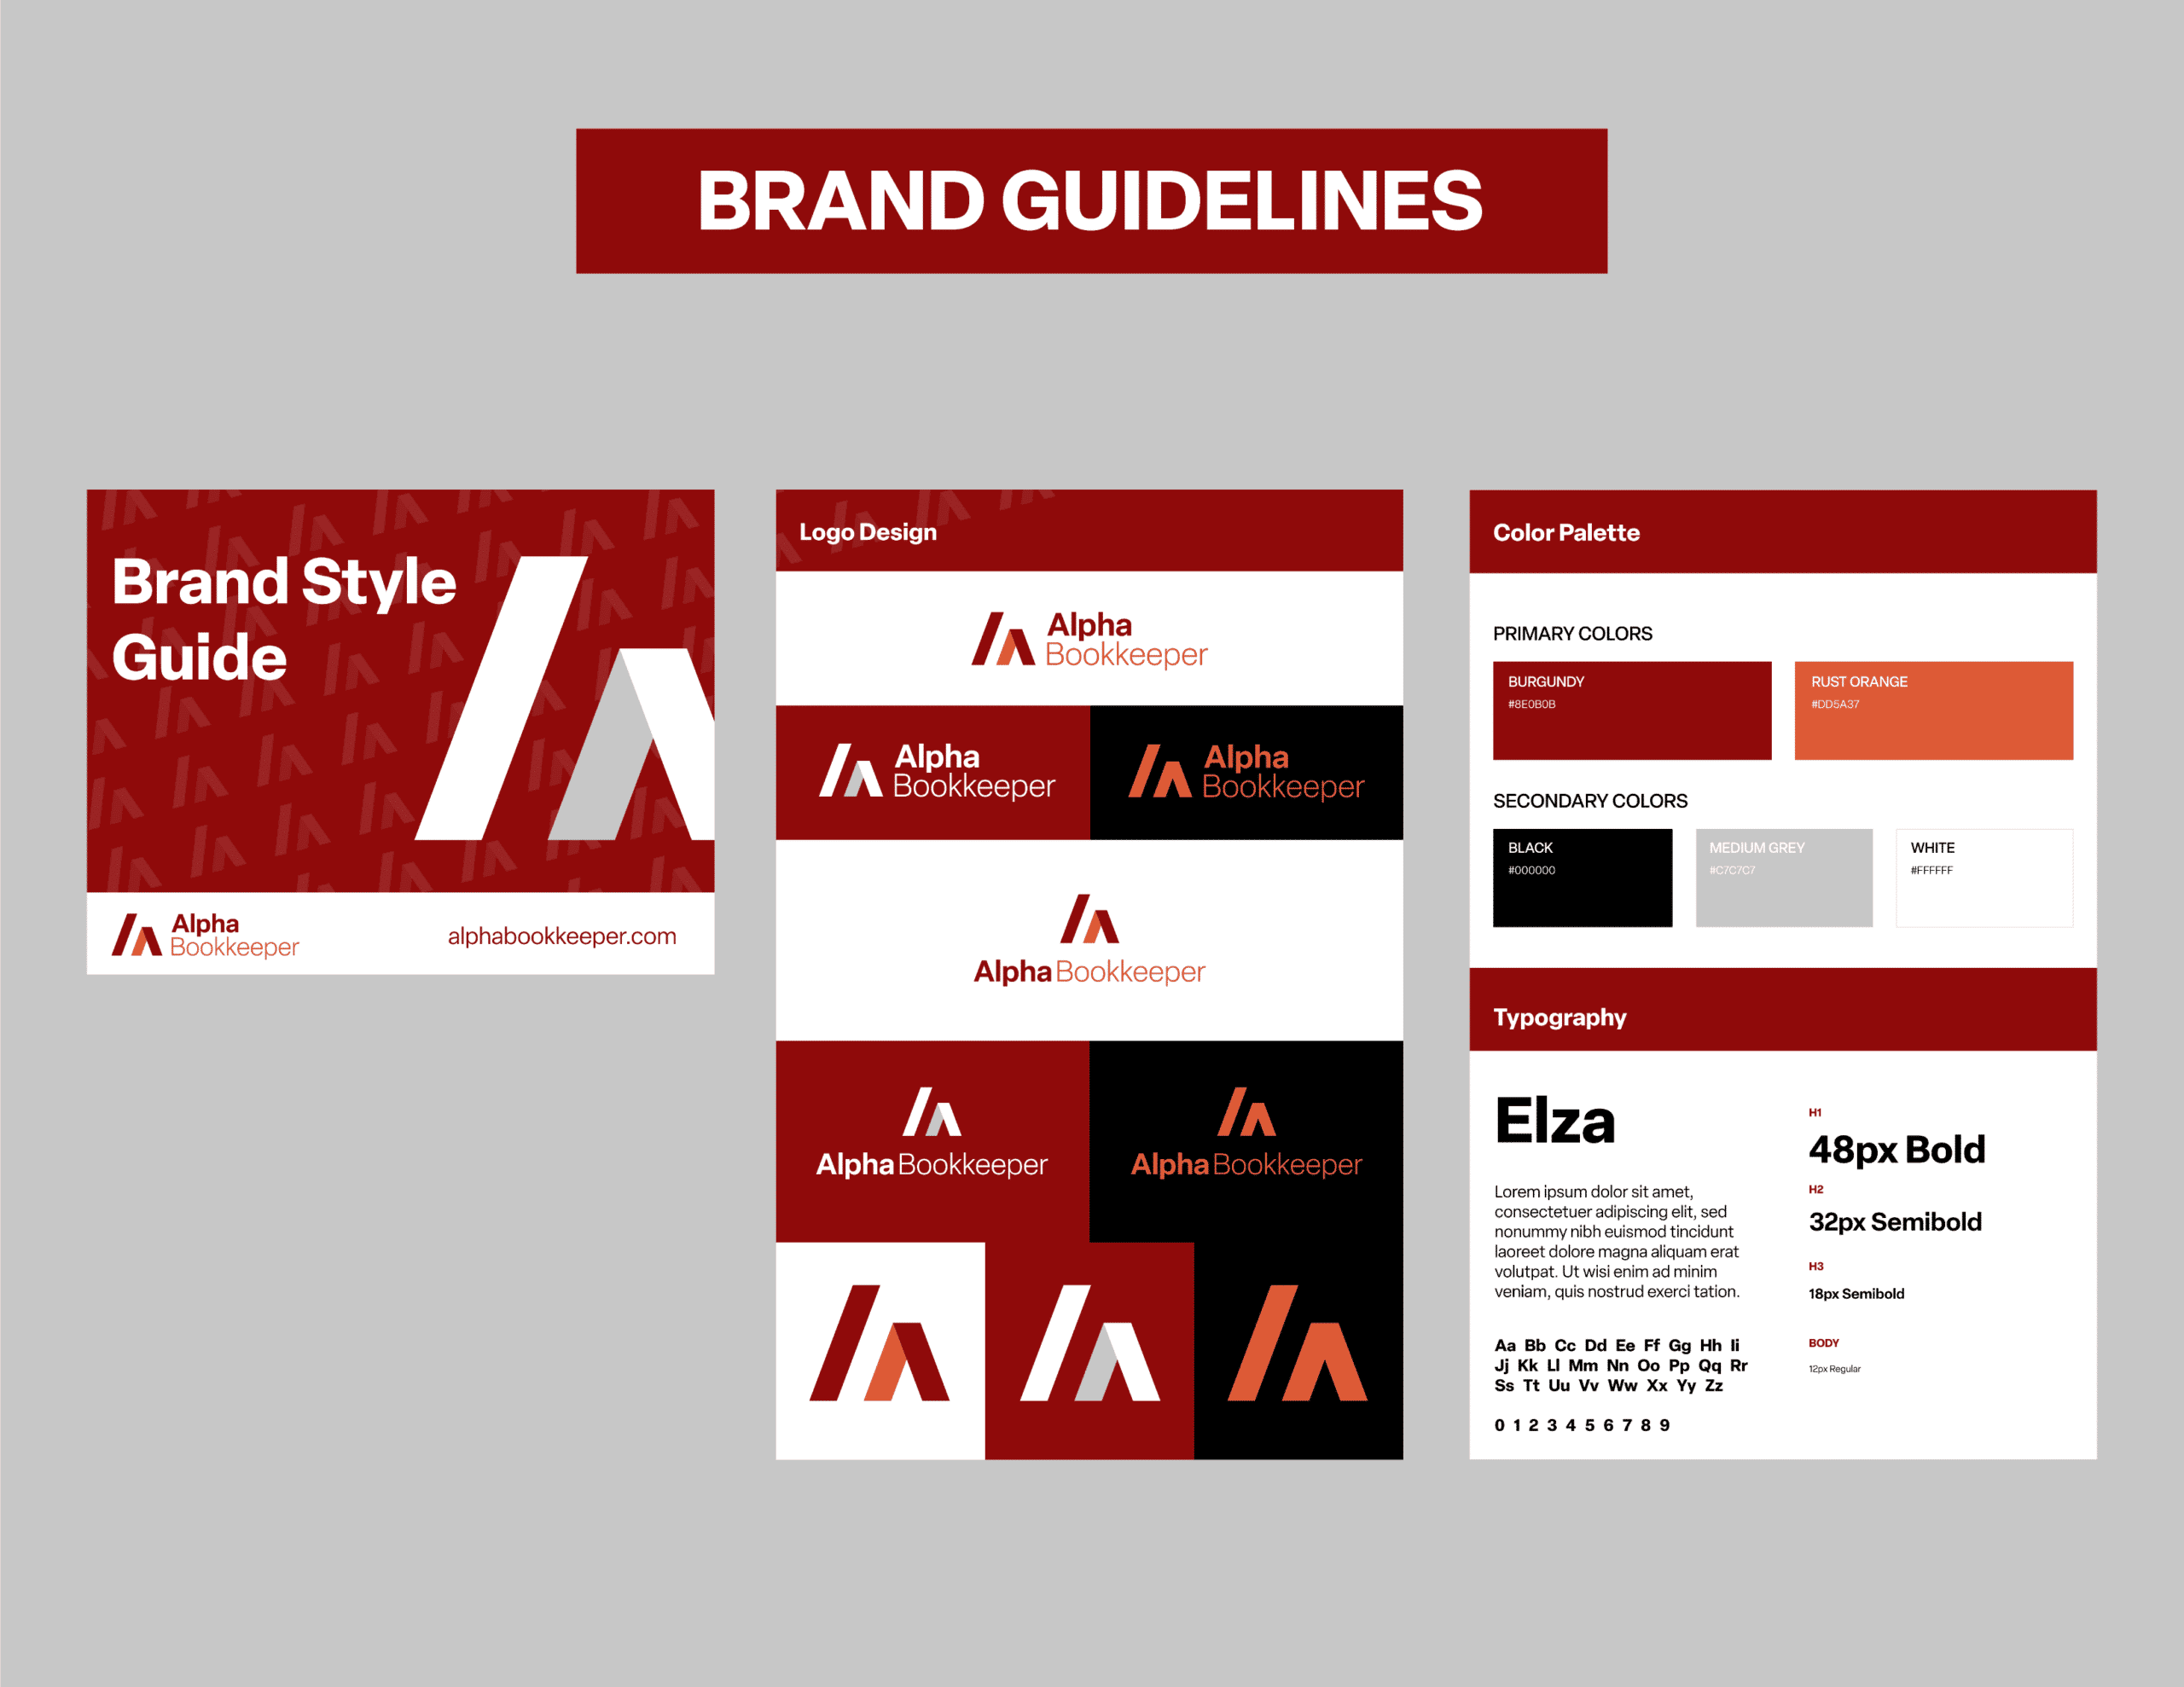 03Alpha_Showcase_Branding Guidelines